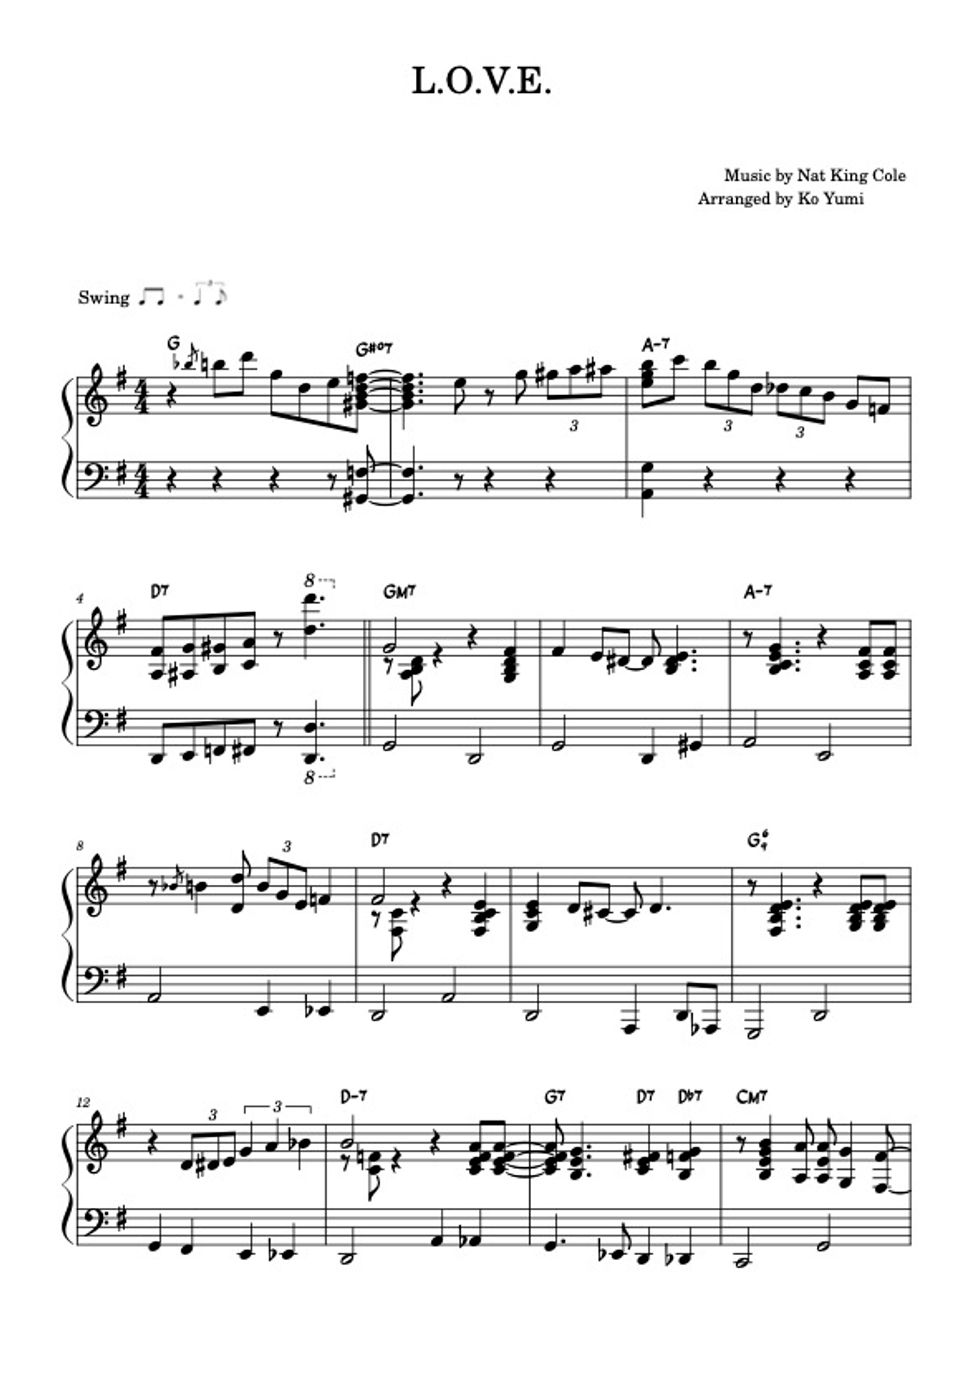 Nat King Cole - L.O.V.E. (Jazz Solo Piano) by KoYumi Music